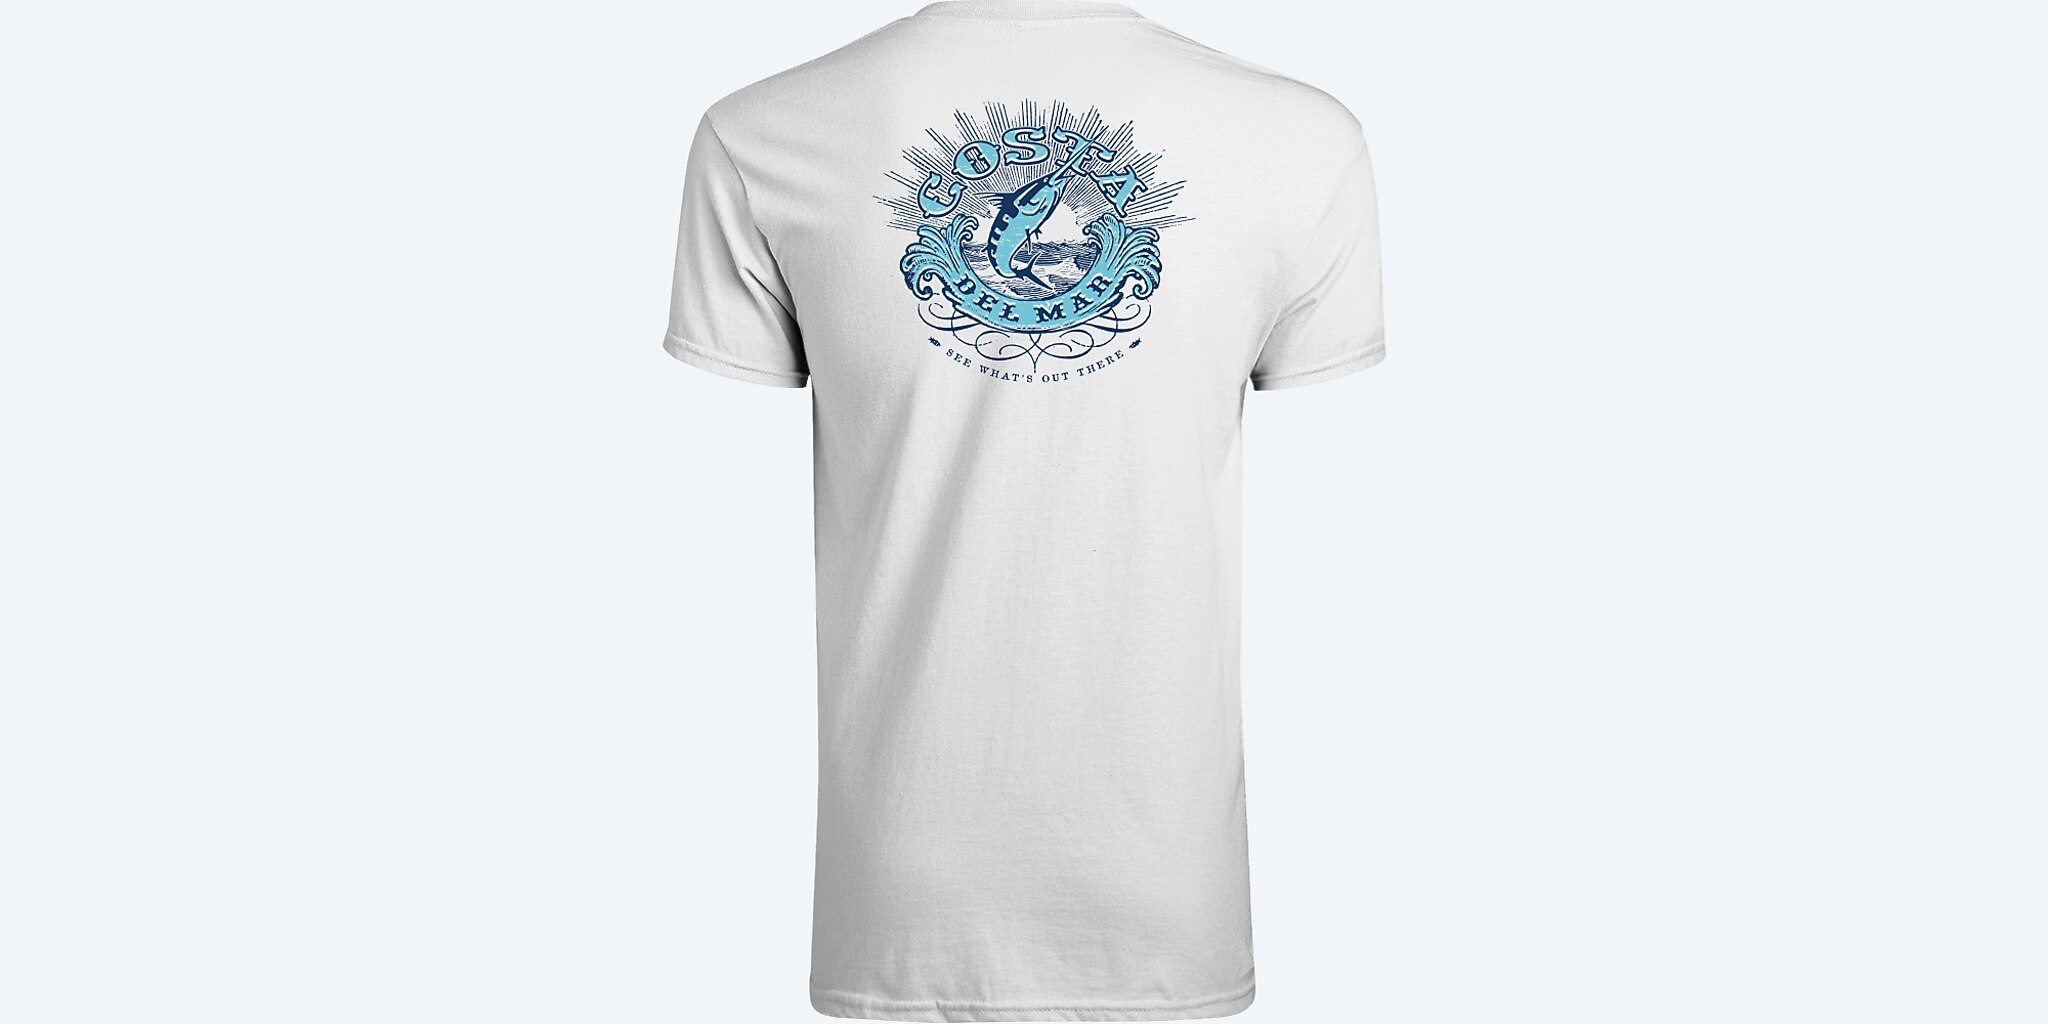 Costa fishing shirt - Gem